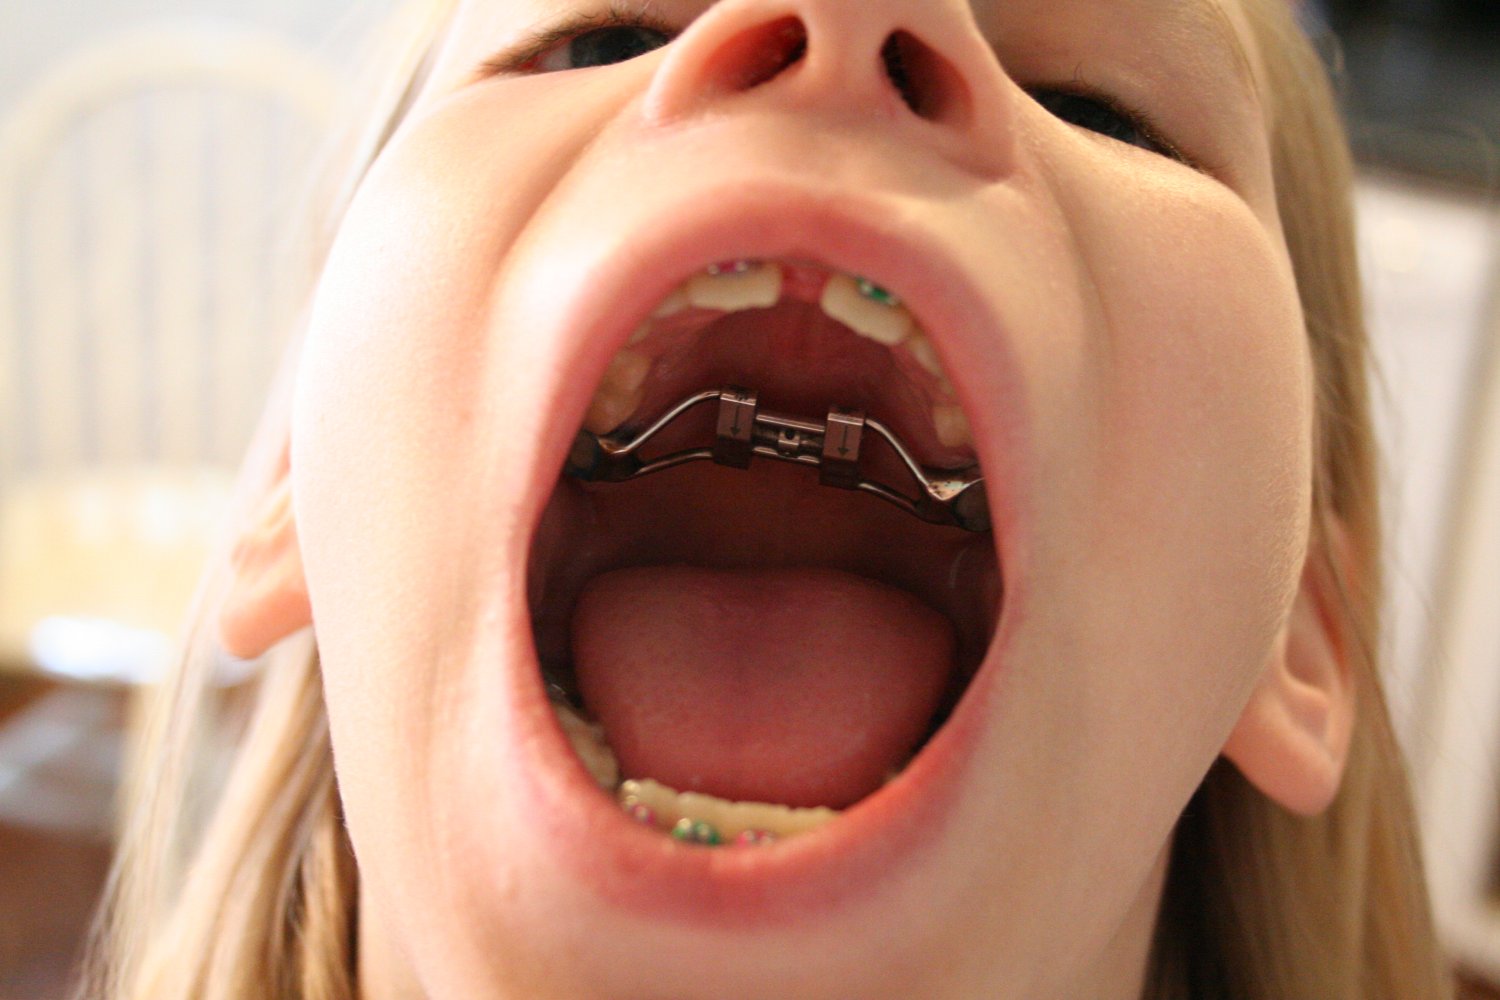 Teen braces swallow